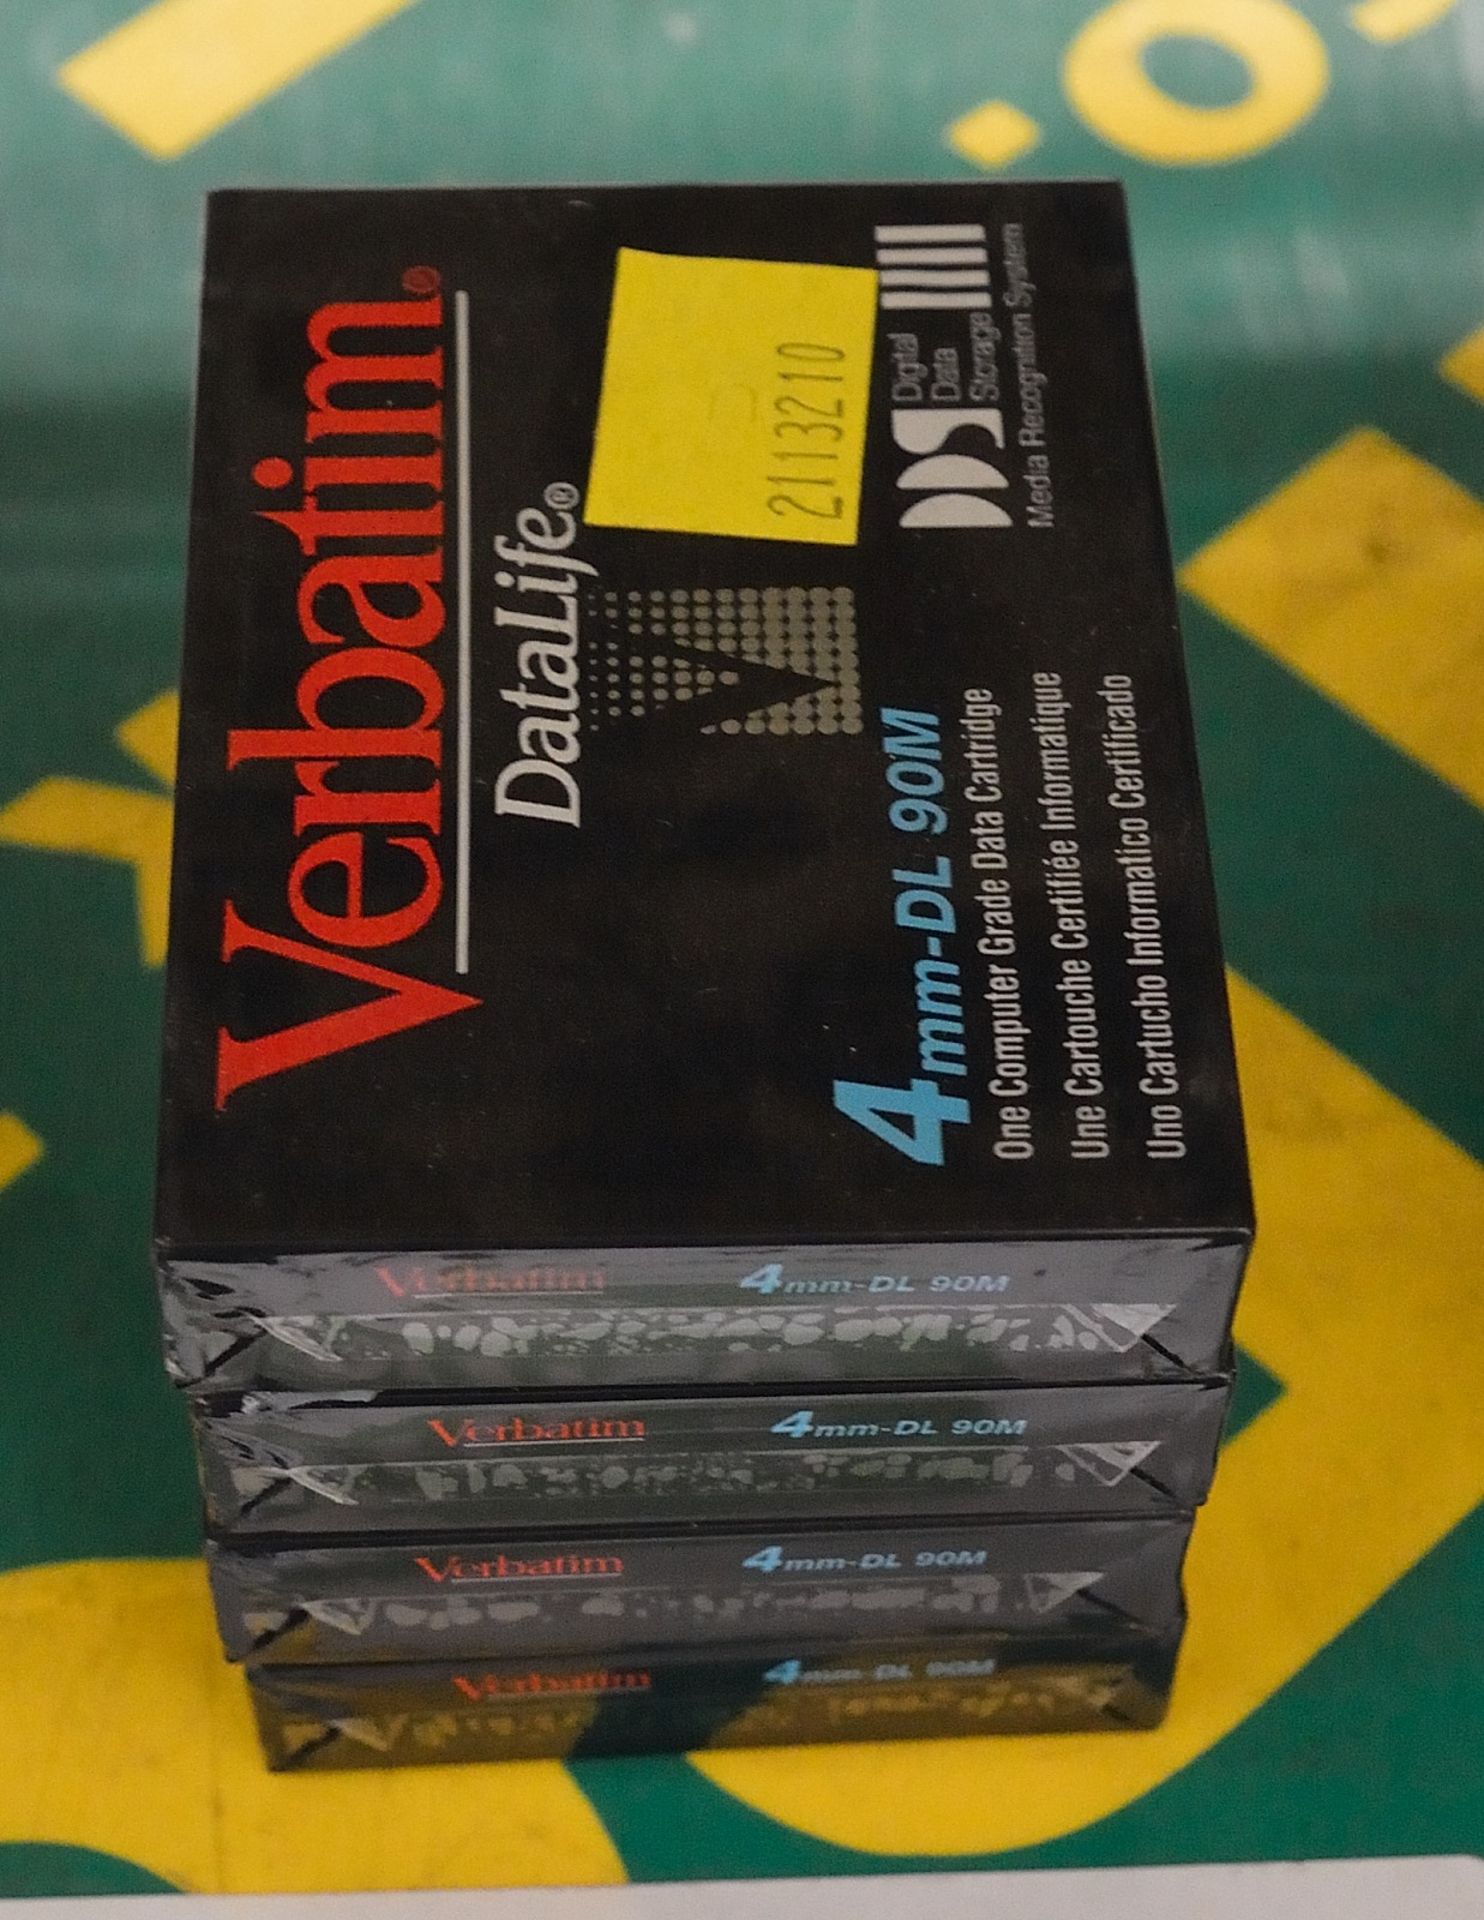 4x Verbatim Data Cartridges DL 90M 4mm.